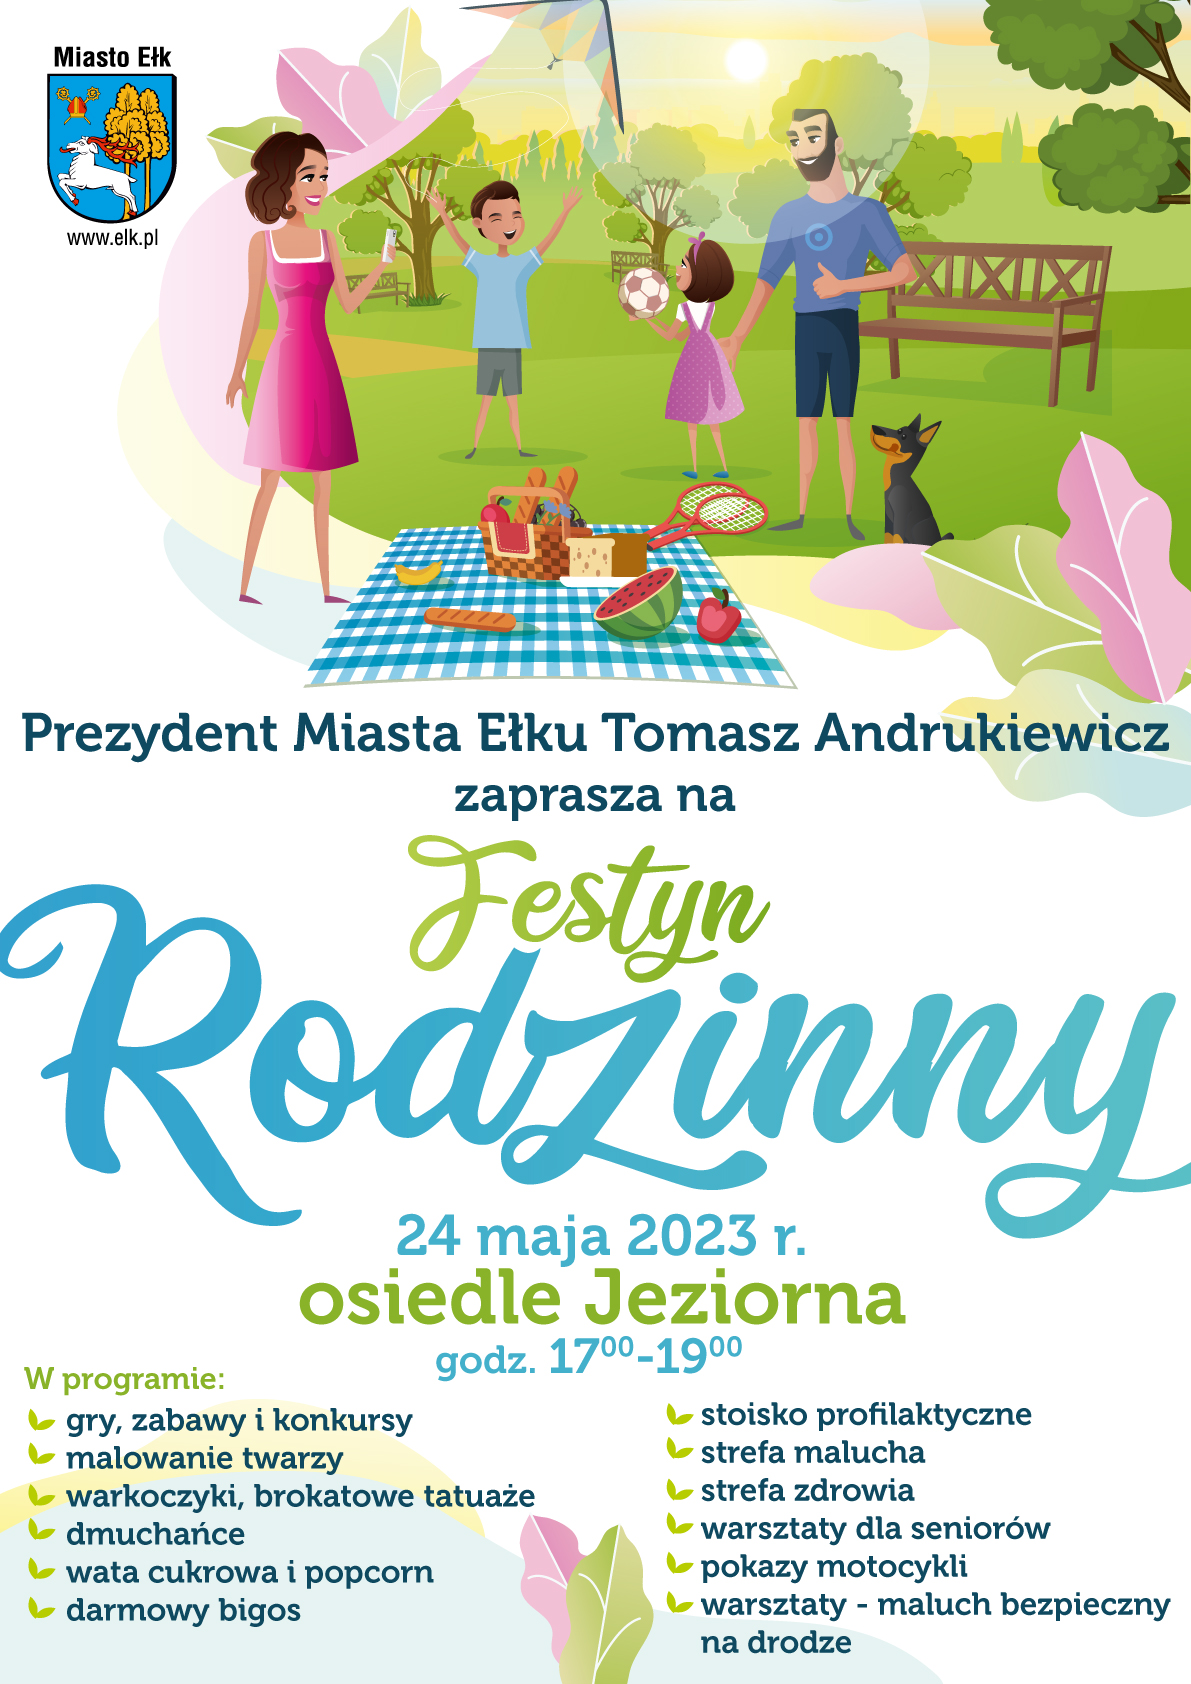 Ełk Family Days - сімейний фестиваль у житловому комплексі Jeziorna